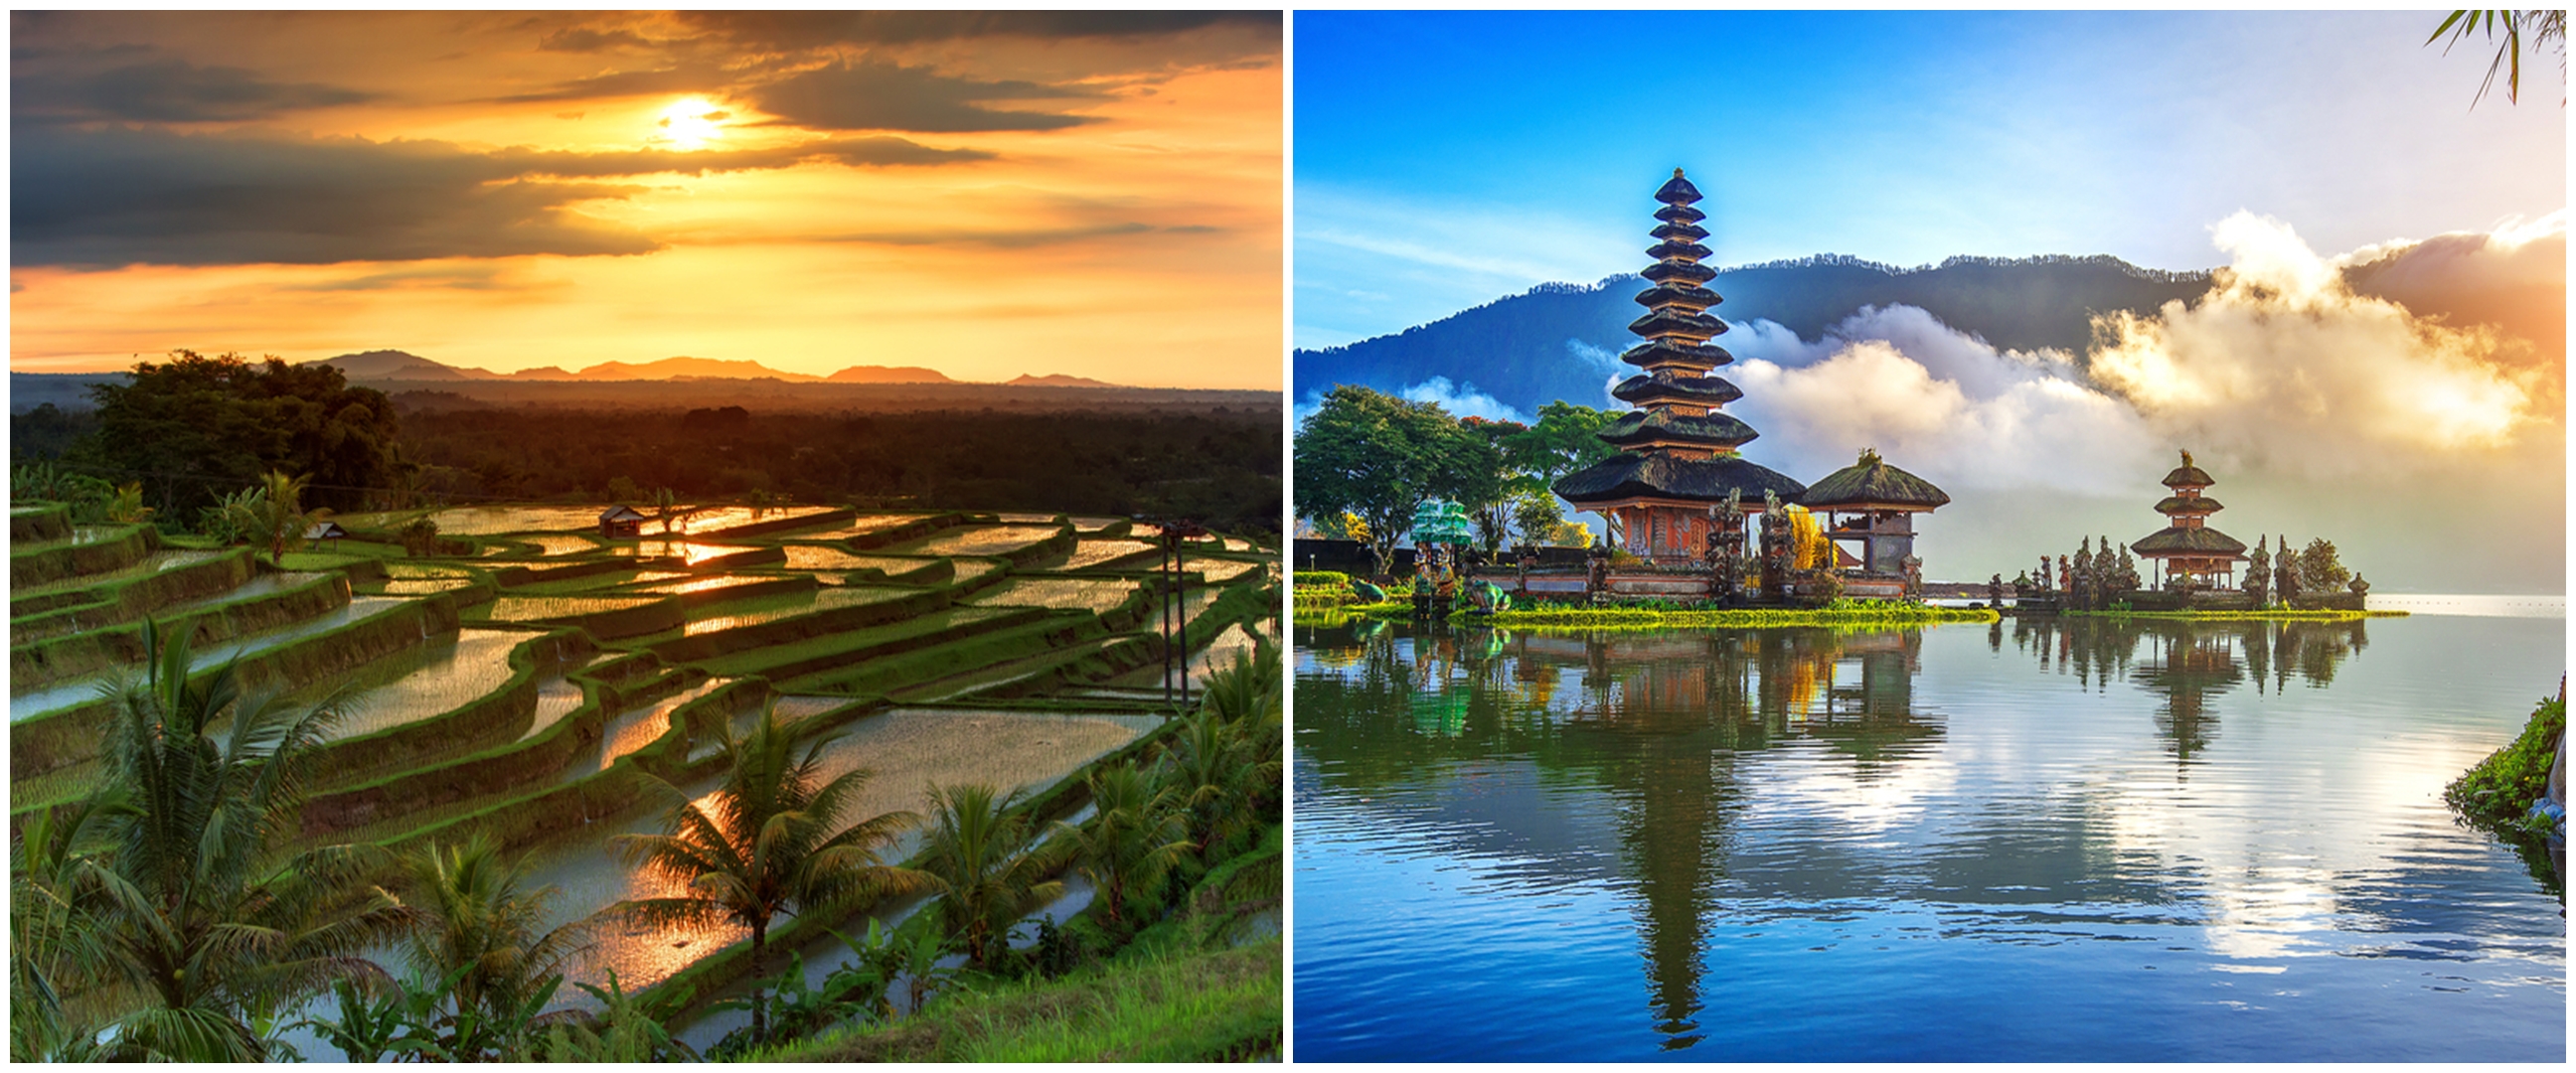 Jangan mau kunjungi destinasi yang sama! Ini 5 ide jelajah destinasi wisata baru di Bali